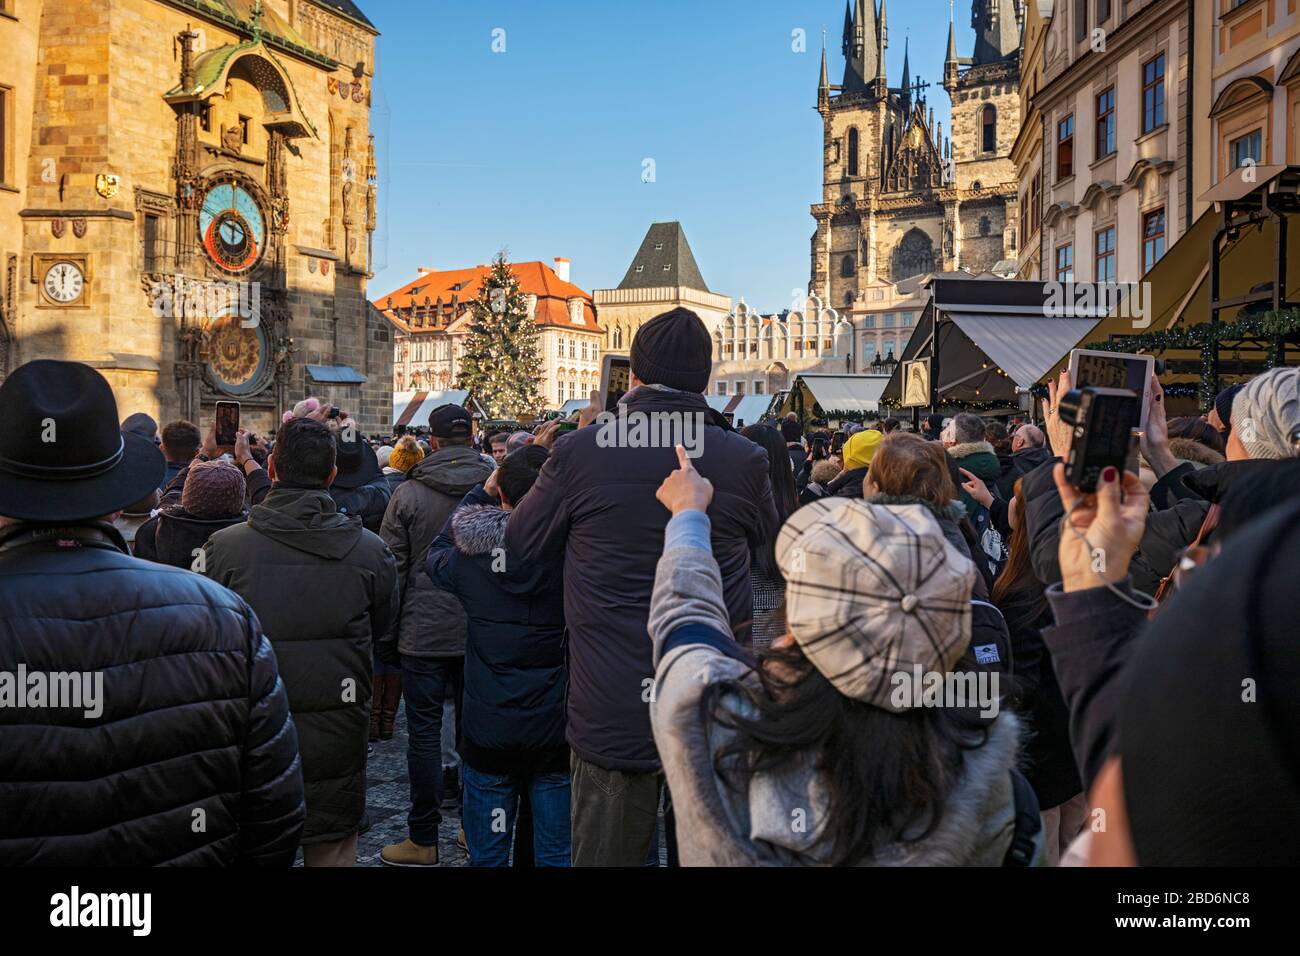 Massentourismus in Prag vor dem Altstädter Rathaus mit der astronomischen Uhr Foto de stock